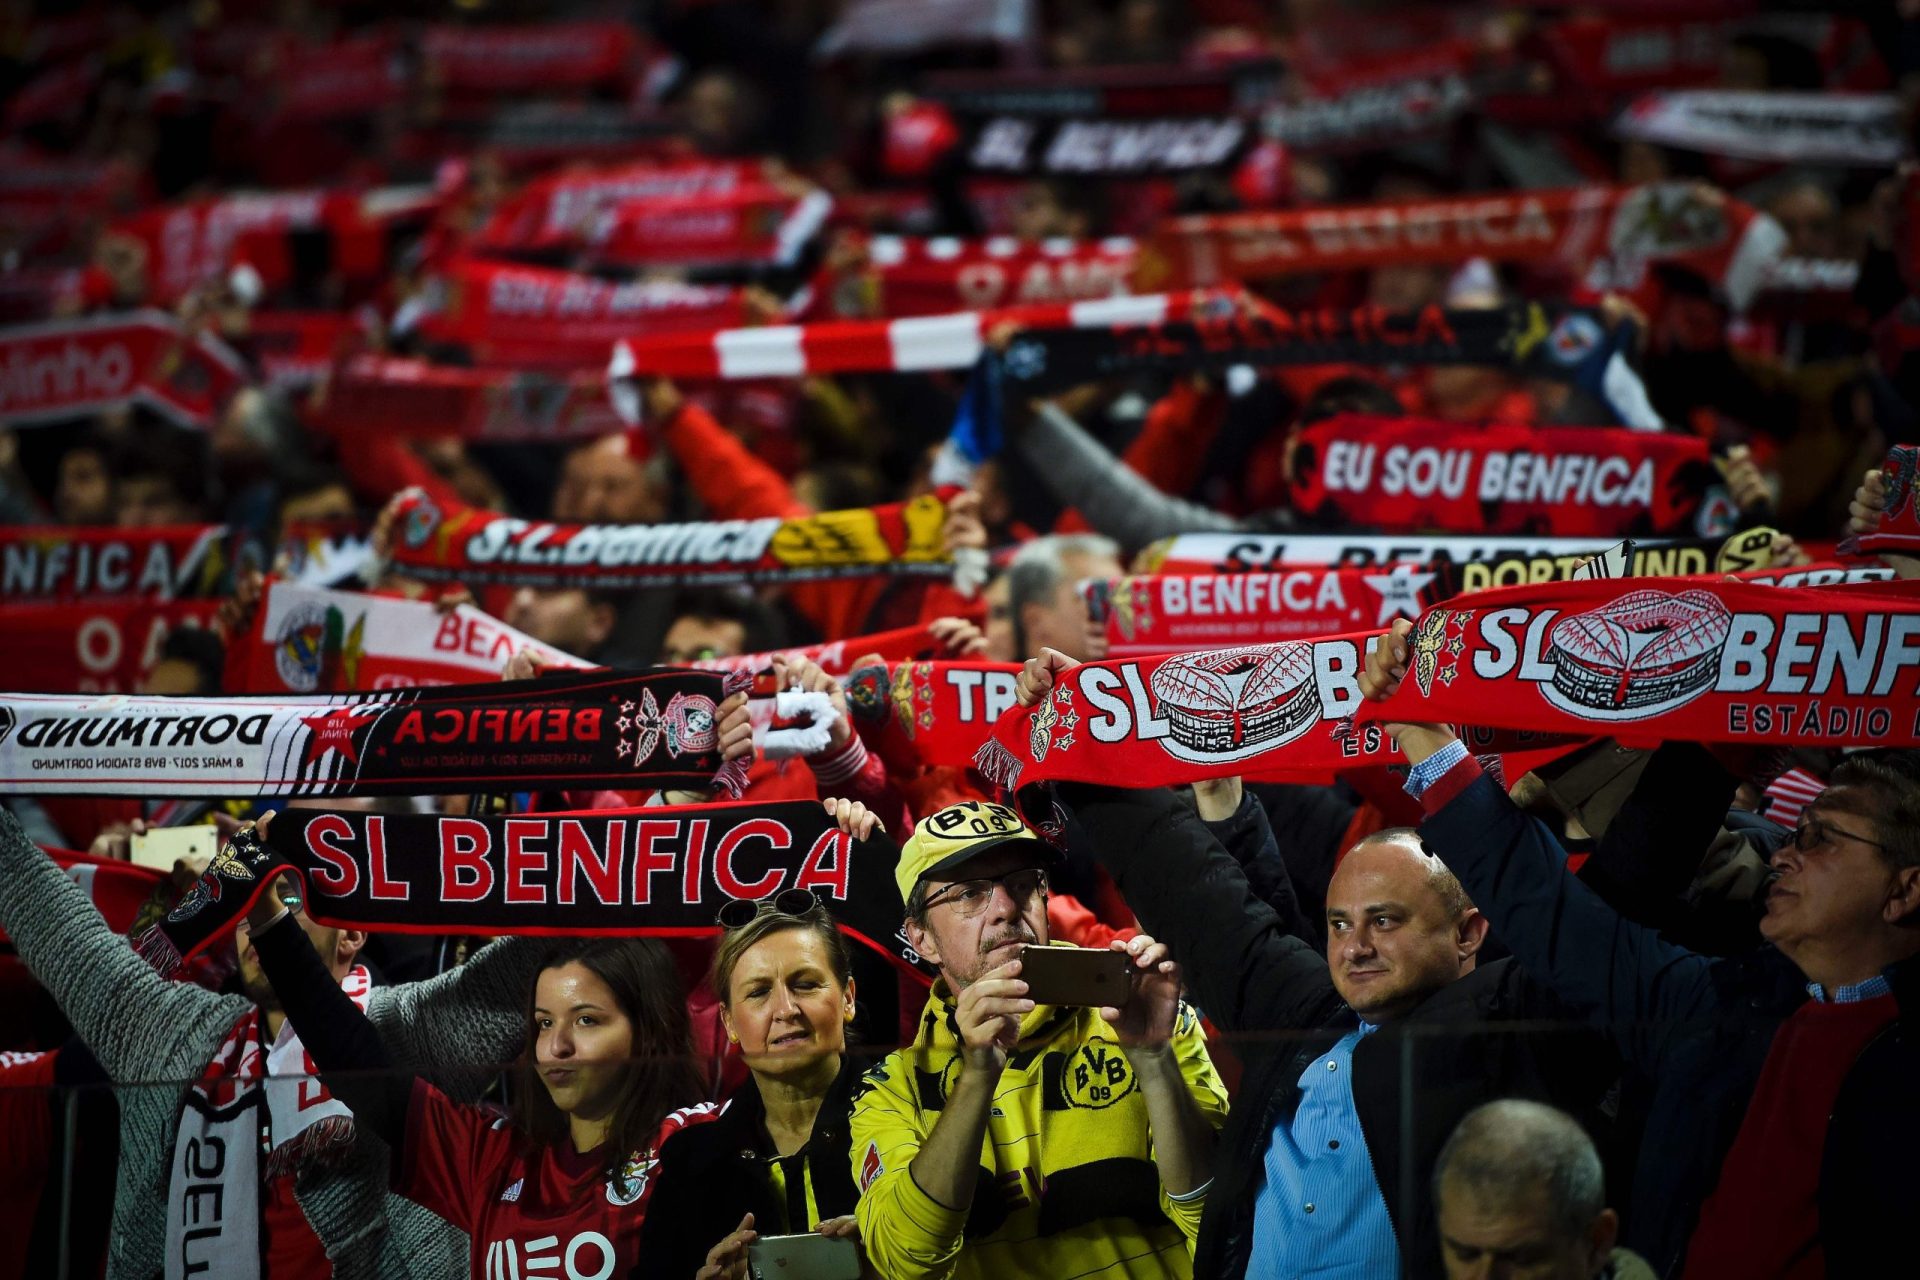 Detidos seis adeptos antes do Benfica-Dortmund